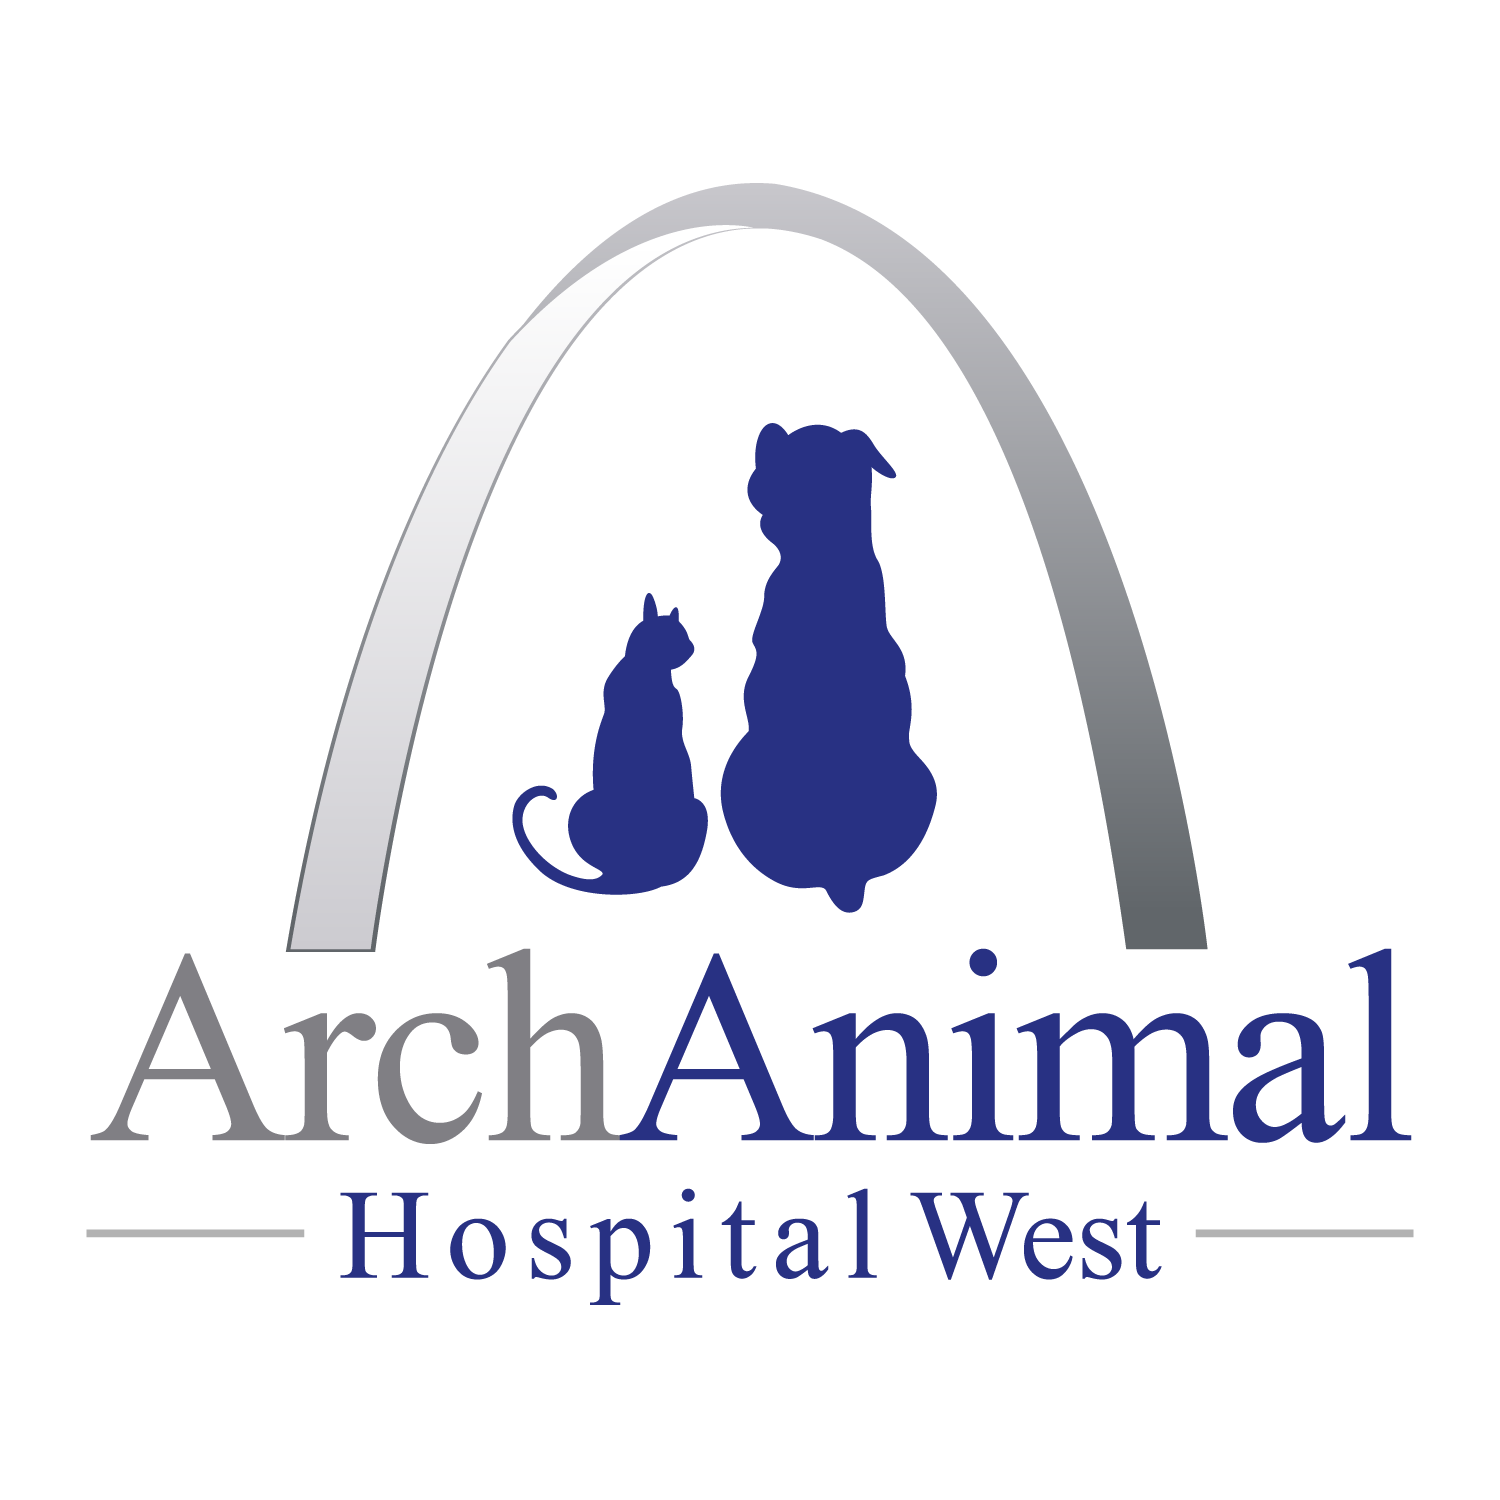 Arch Animal Hospital West